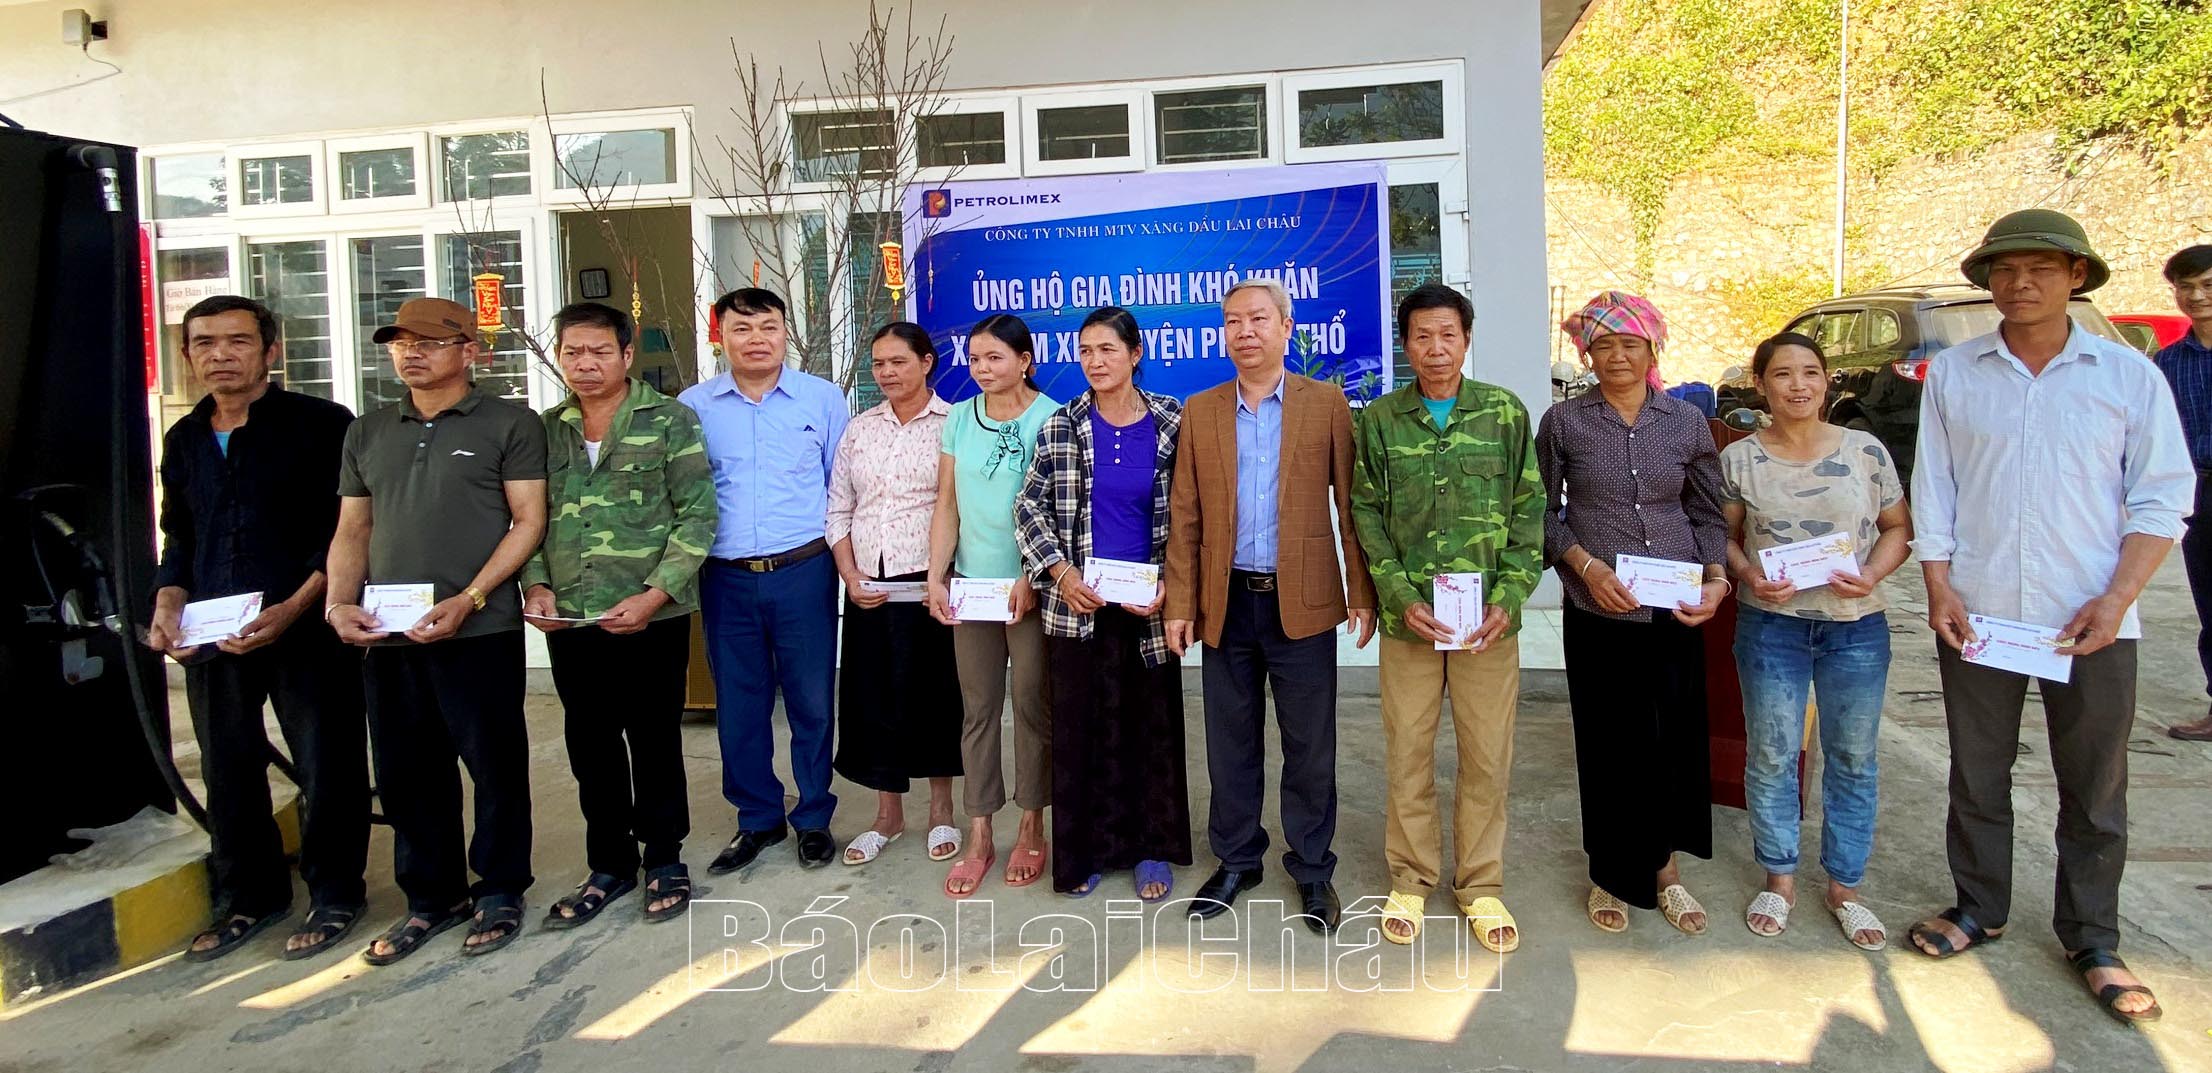 Lãnh đạo Công ty Xăng dầu Lai Châu và xã Nậm Xe trao quà cho các hộ nghèo, gia đình khó khăn trên địa bàn xã Nậm Xe.